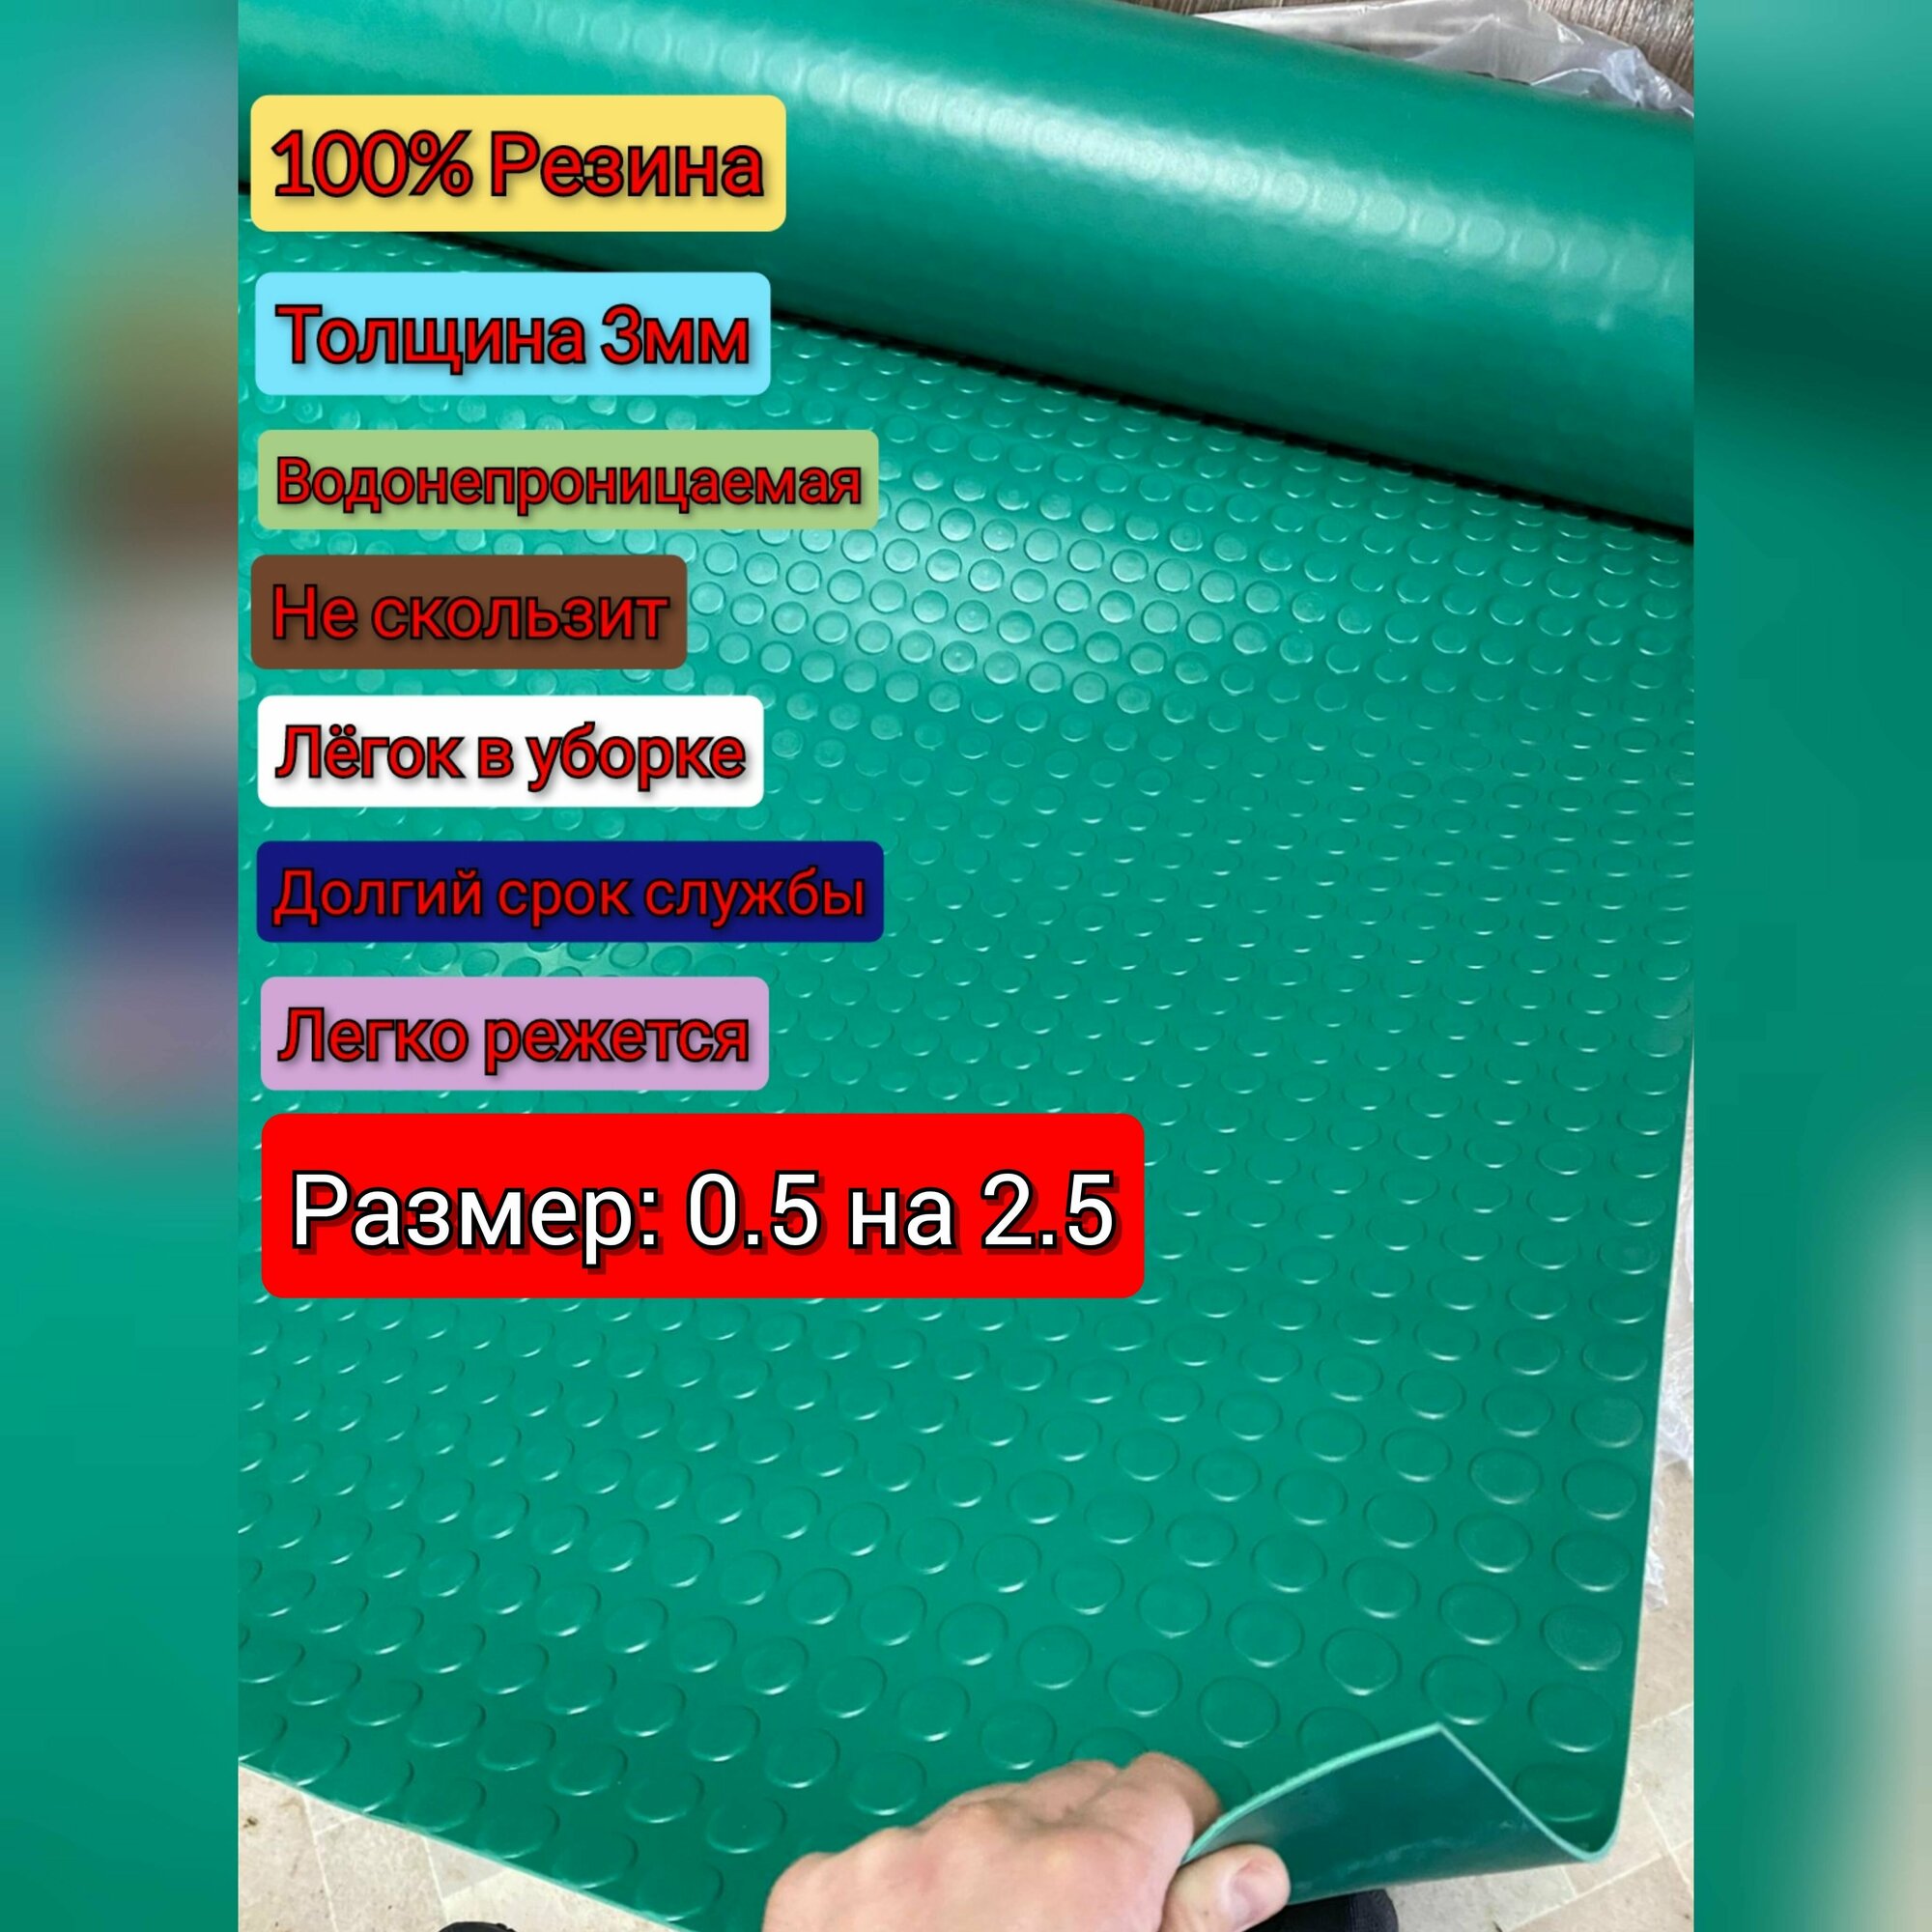 Резиновое покрытие напольное в рулоне 0.5 х 2.5 (Монета, цвет зелёный) Резиновая дорожка для авто, гаража, ступень, для лифта